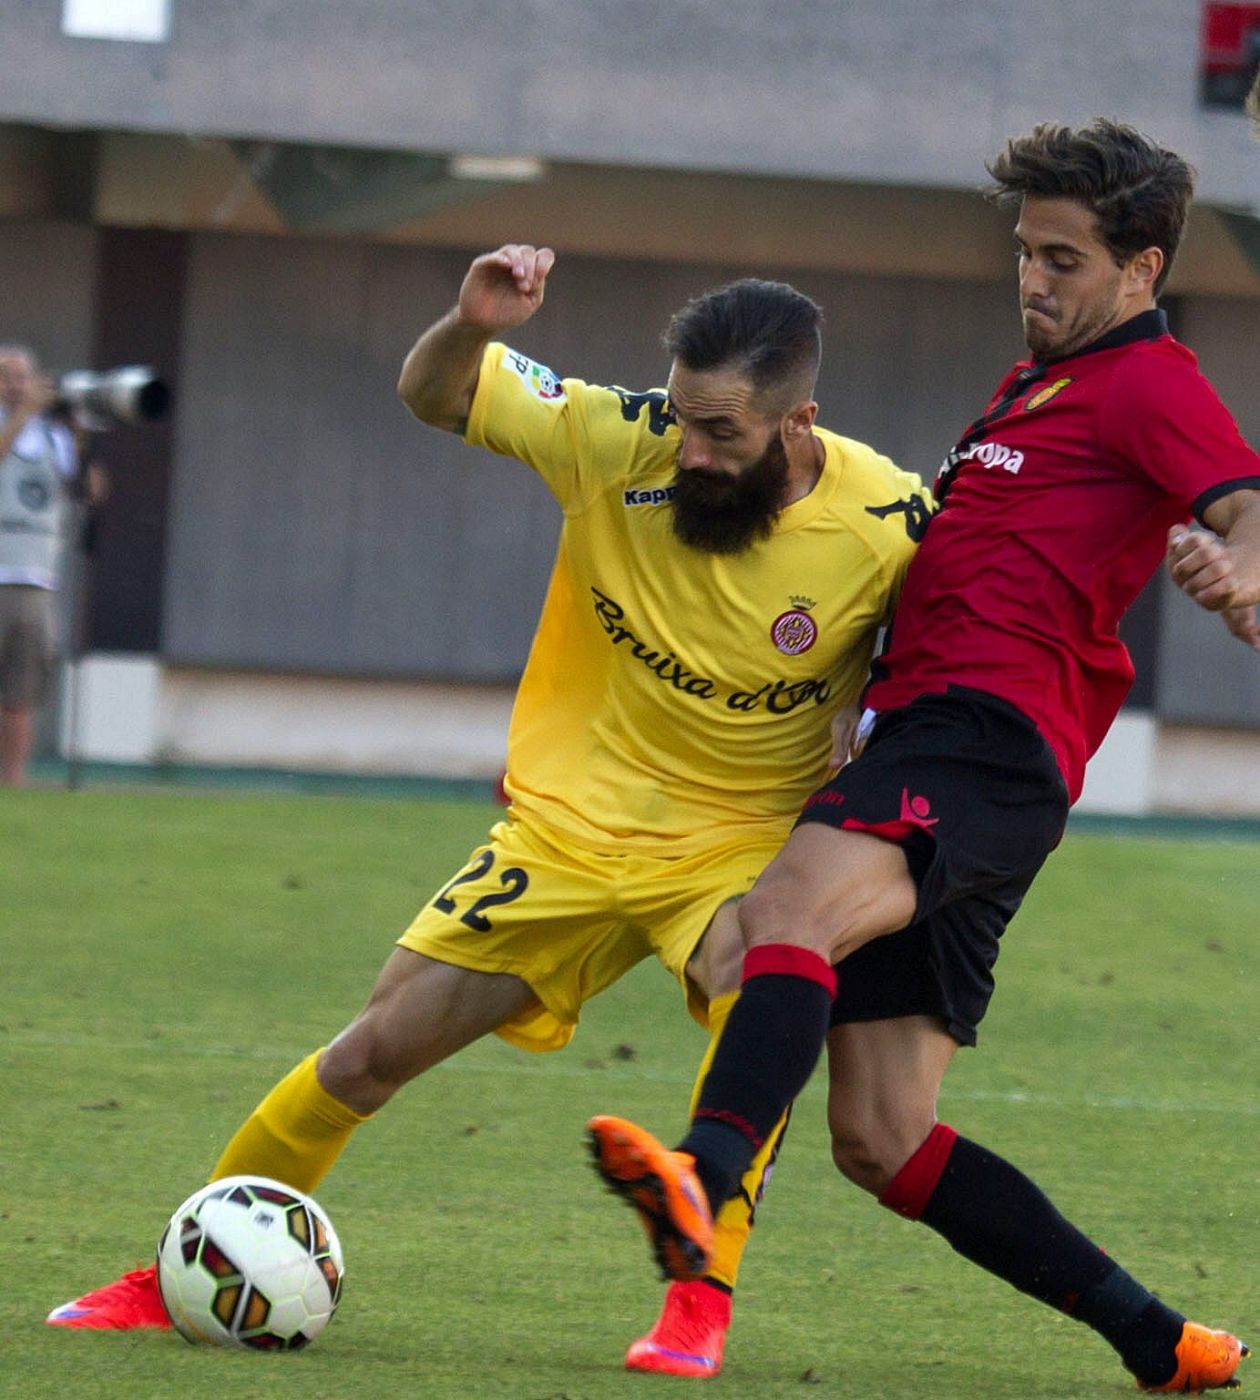 El defensa del Girona CF Miguel Ángel Garrido Cifuentes disputa el balón con Javi Ros.